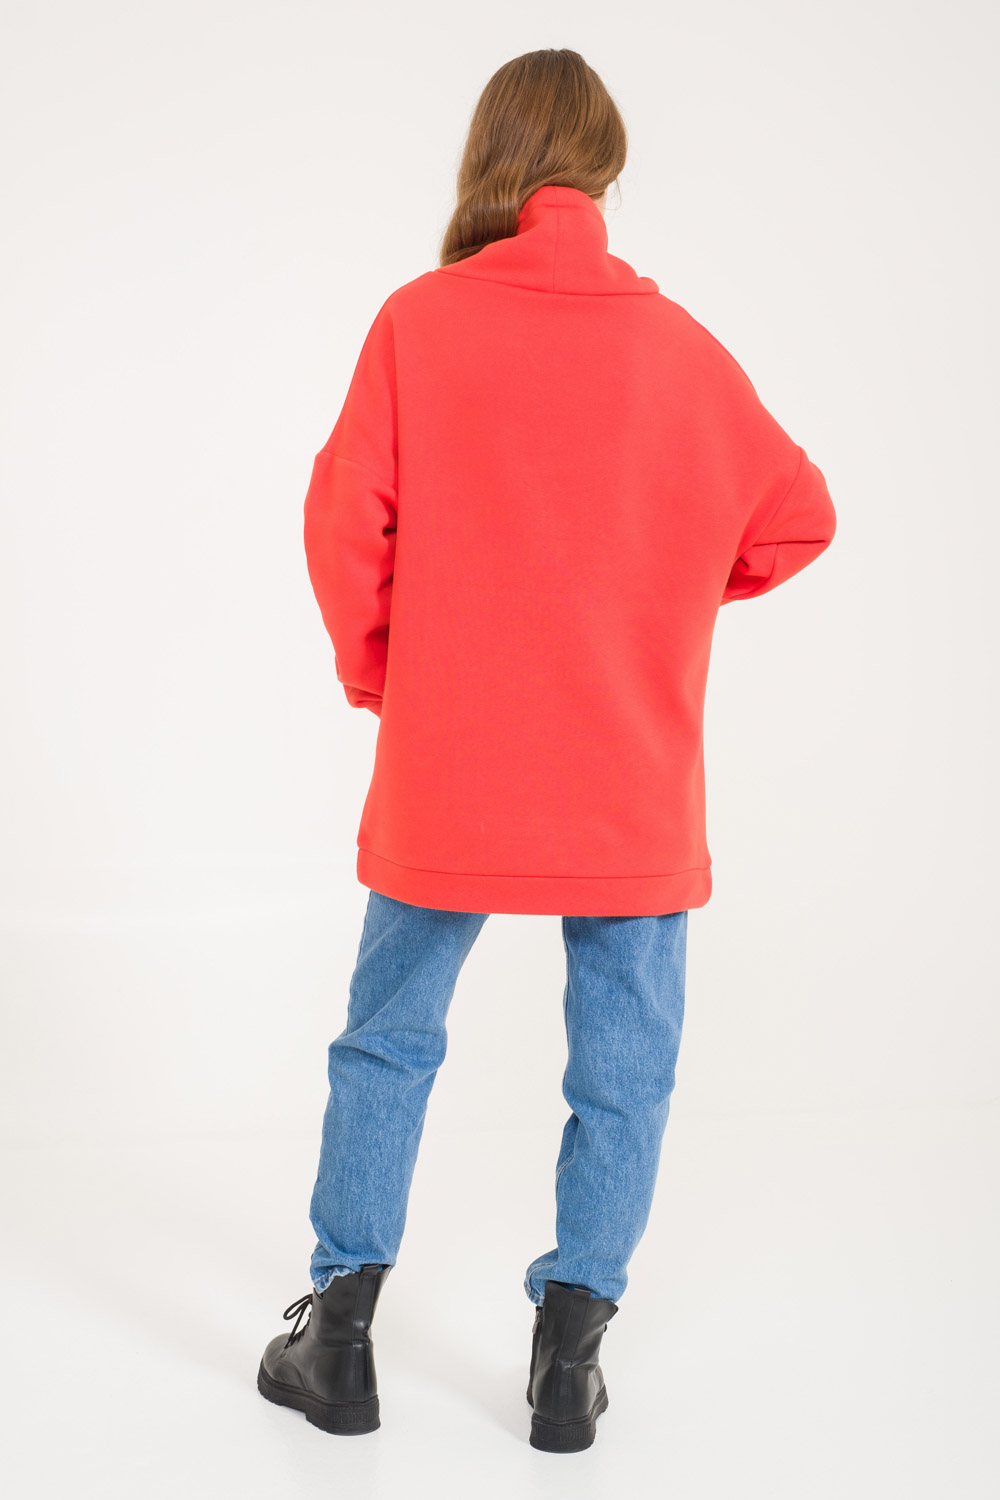 Turtleneck Orange Sweatshirt with Kangaroo Pocket